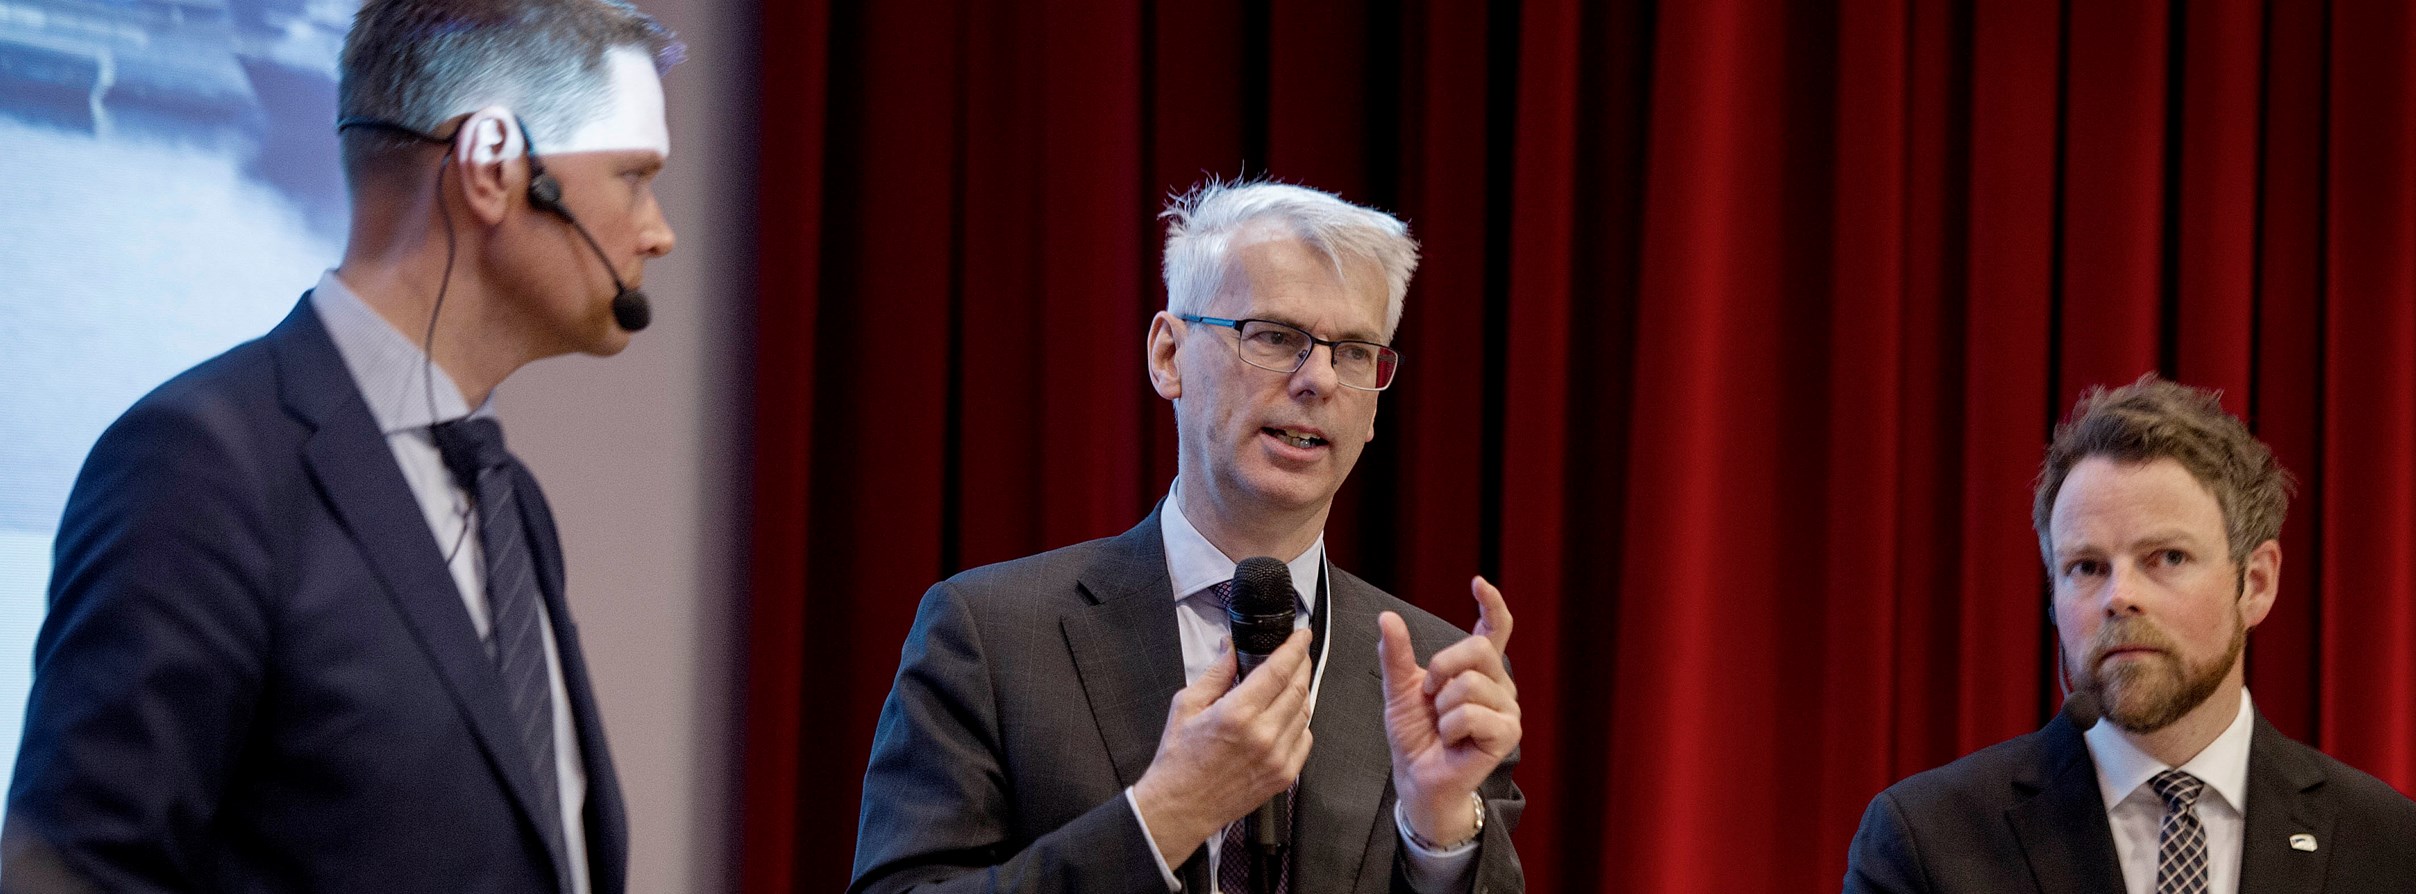 Harald Solberg, administrerende direktør i Norges Rederiforbund, NHH-rektor Øystein Thøgersen og statsråd Torbjørn Røe Isaksen.